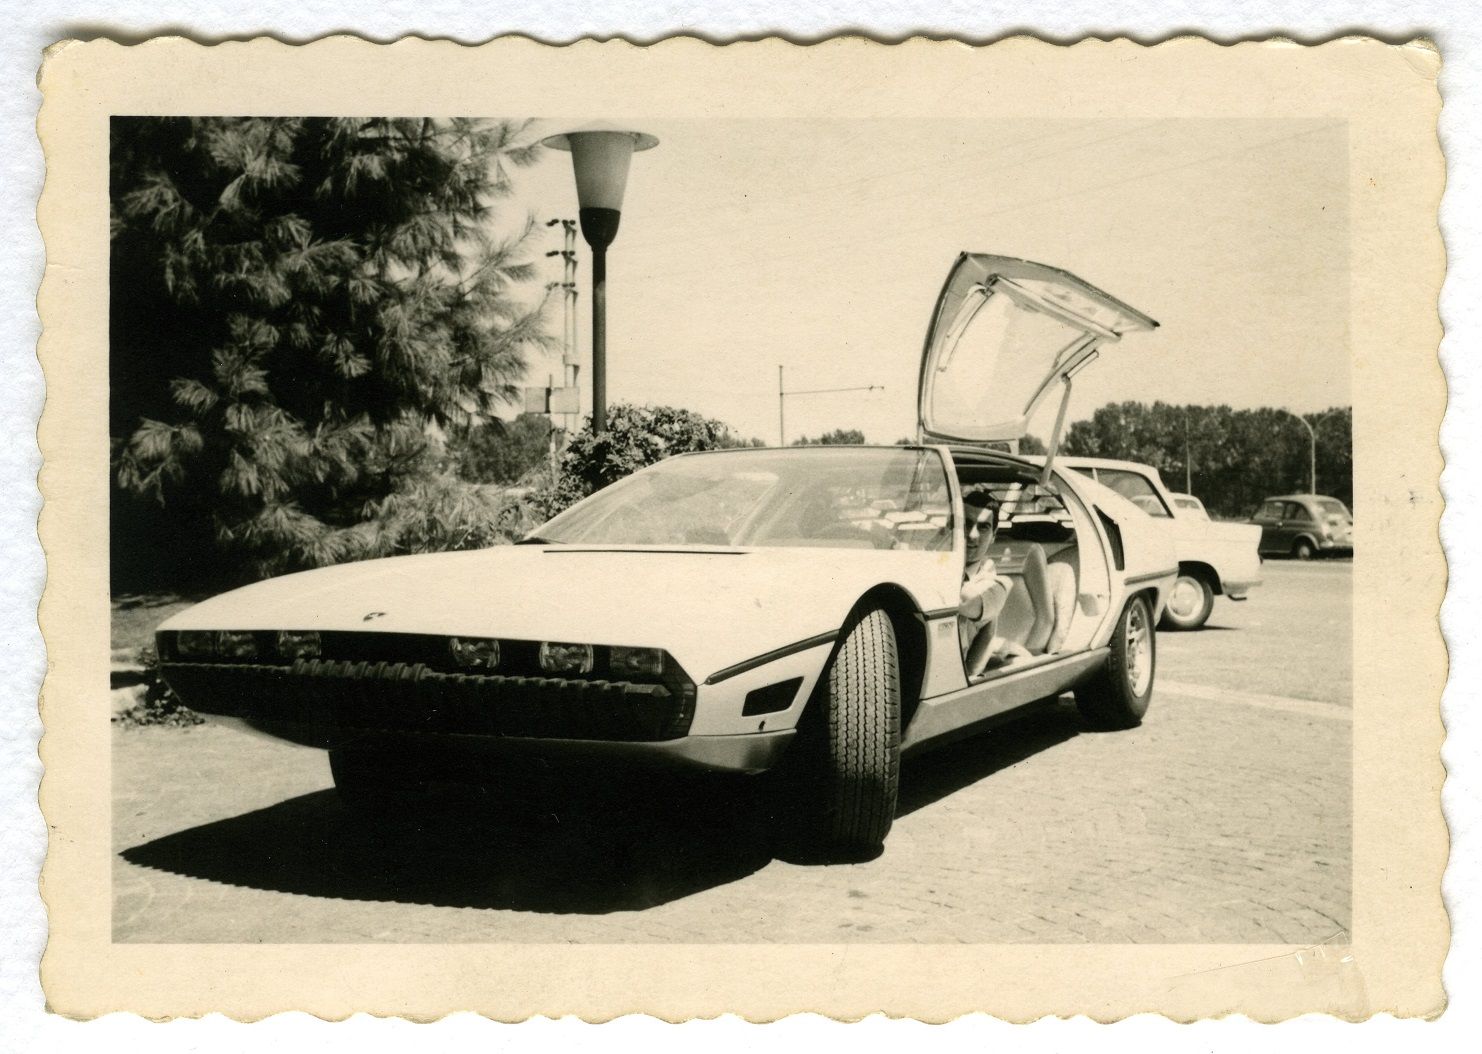 Lamborghini Marzal_Marcello Gandini_automotve history_05